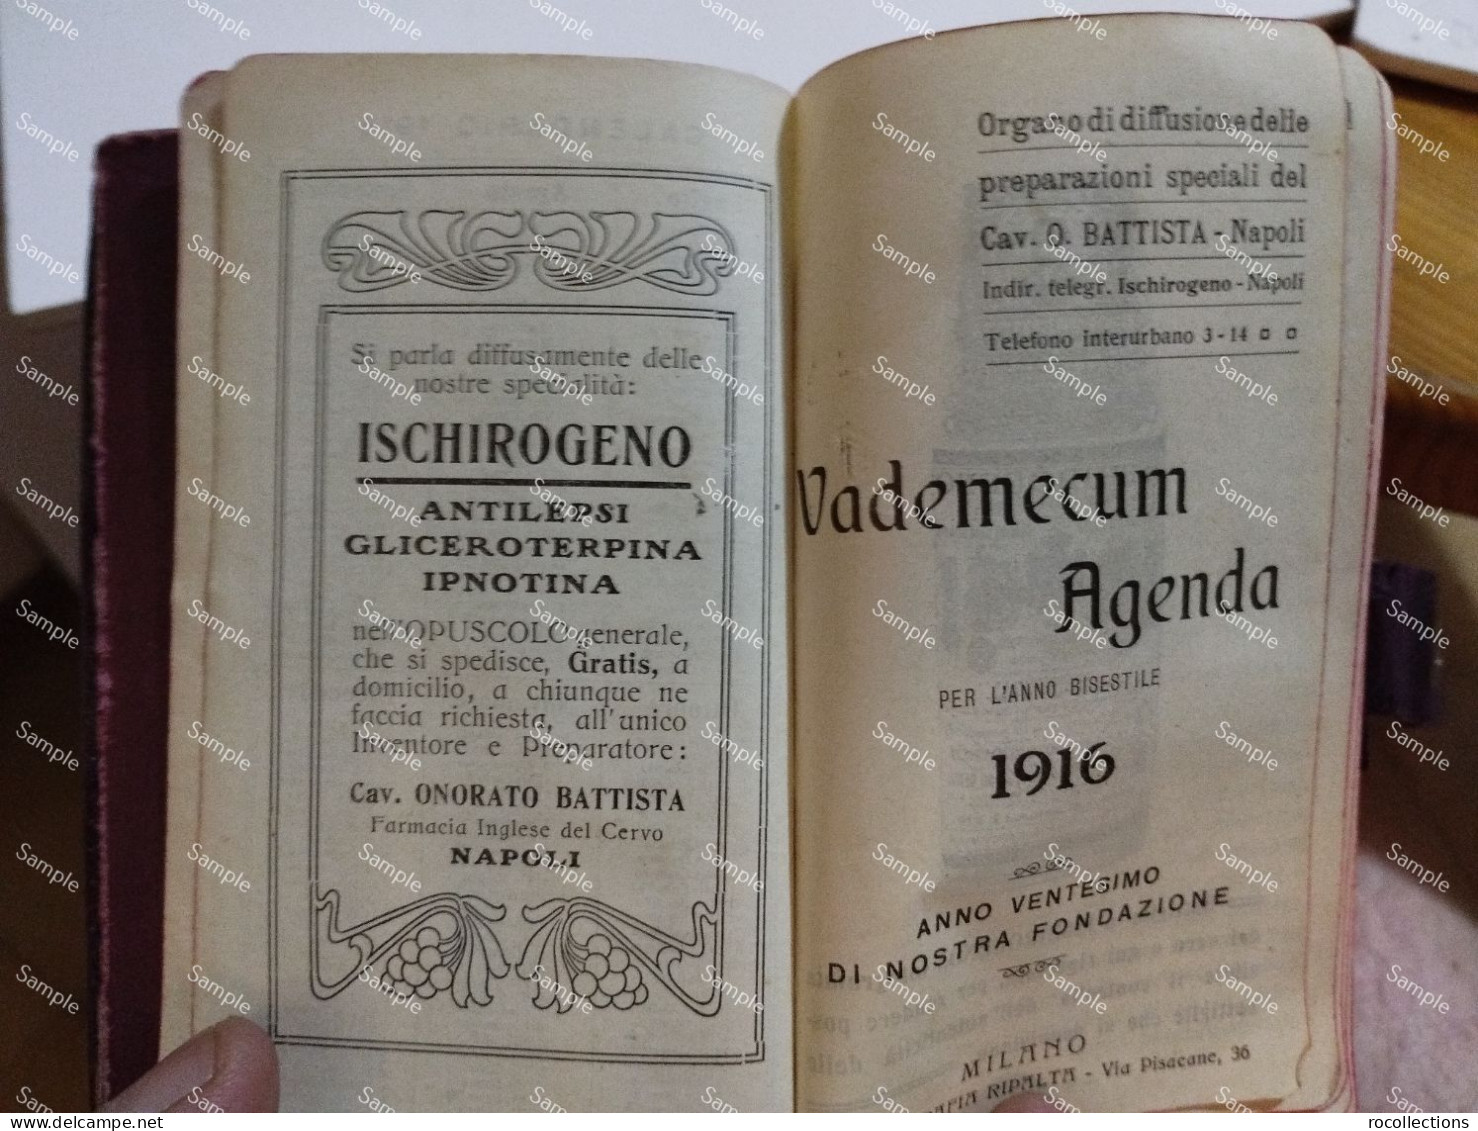 Italy Italia AGENDA 1916 Omaggio Cav. O. BATTISTA Napoli. - Other Book Accessories